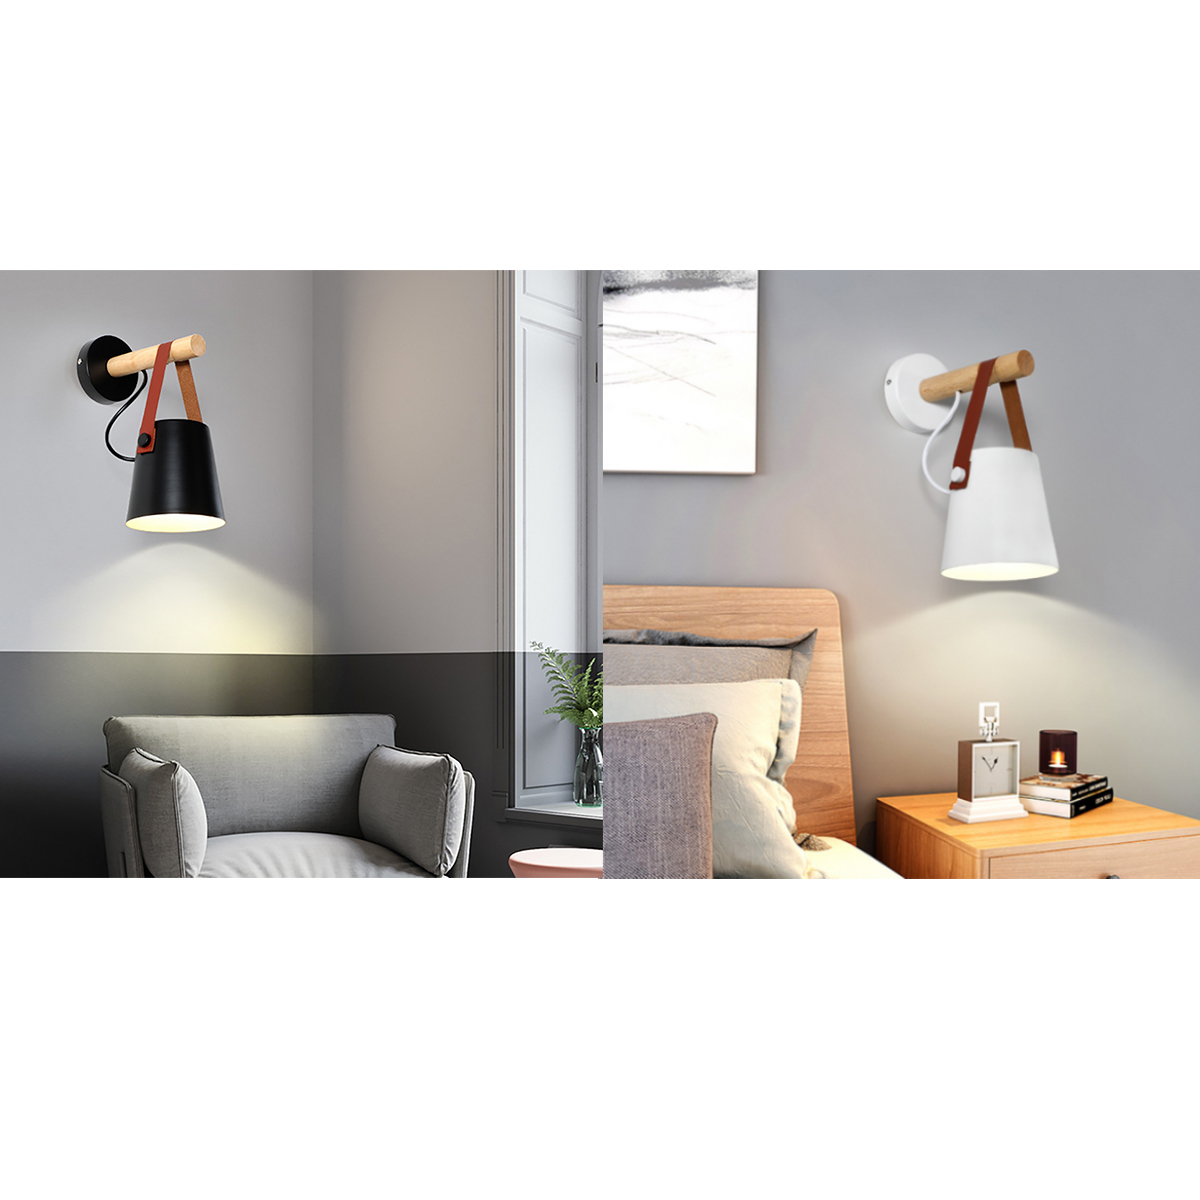 Wall-mounted-Lamp-Bedside-Hanging-Wood-Lights-Living-Room-Bedroom-Decor-220V-1689915-7